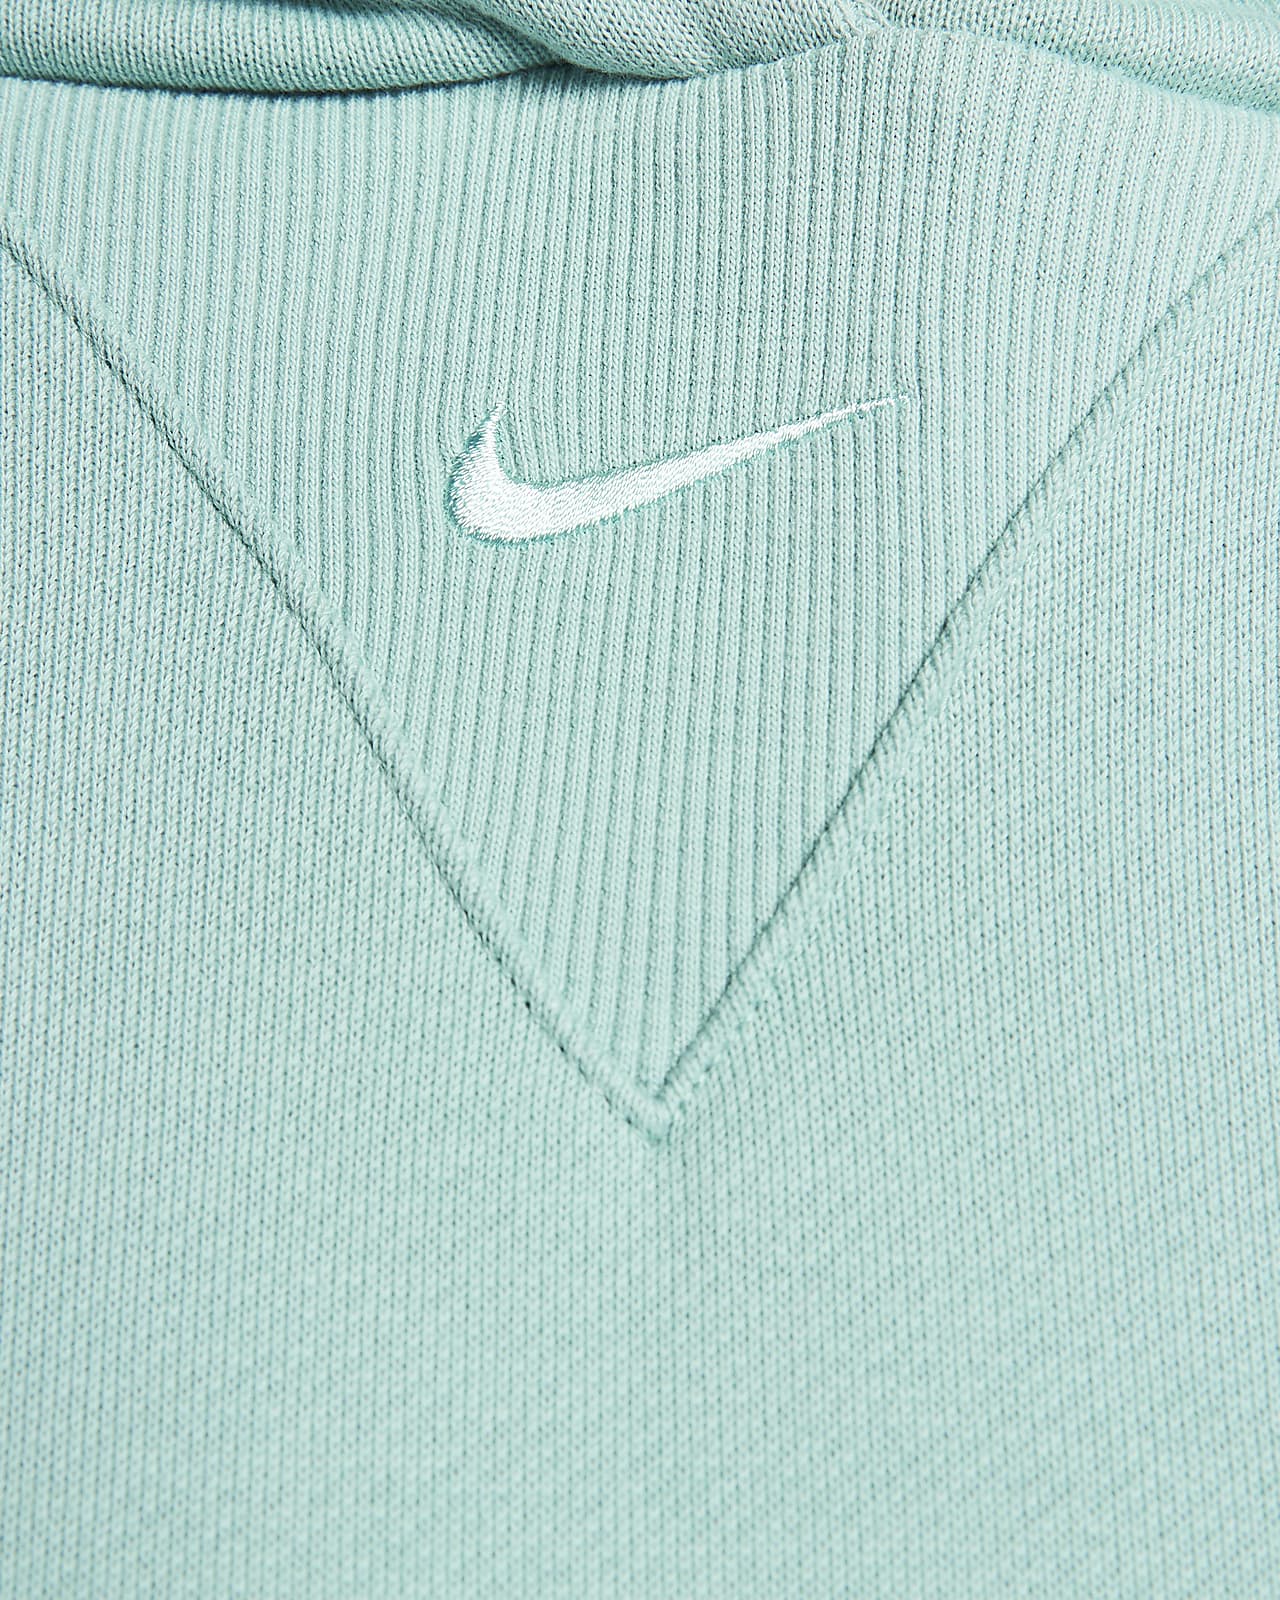 NEW Nike Women's Oversized Pullover Hoodie Sportswear Turquoise (DJ7668  482)